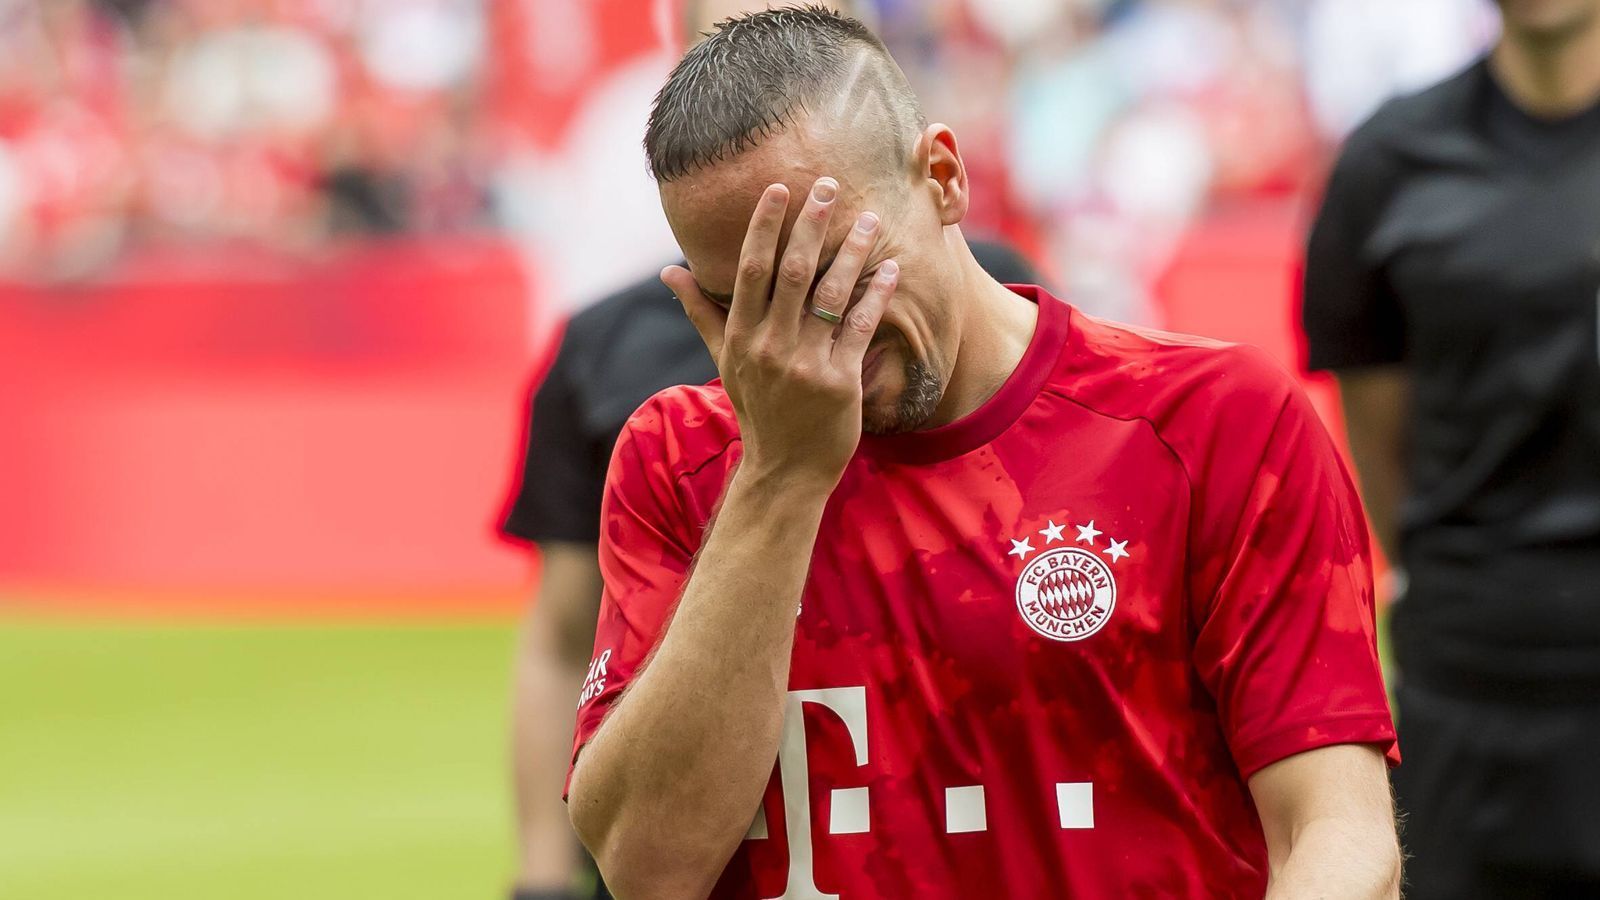 
                <strong>Franck Ribery zu Tränen gerührt</strong><br>
                Der Franzose ist bei der Verabschiedung sichtbar emotional und kann sich ein paar Tränen nicht verkneifen. Das liegt wohl auch an der Aktion der Bayern-Fans ...
              